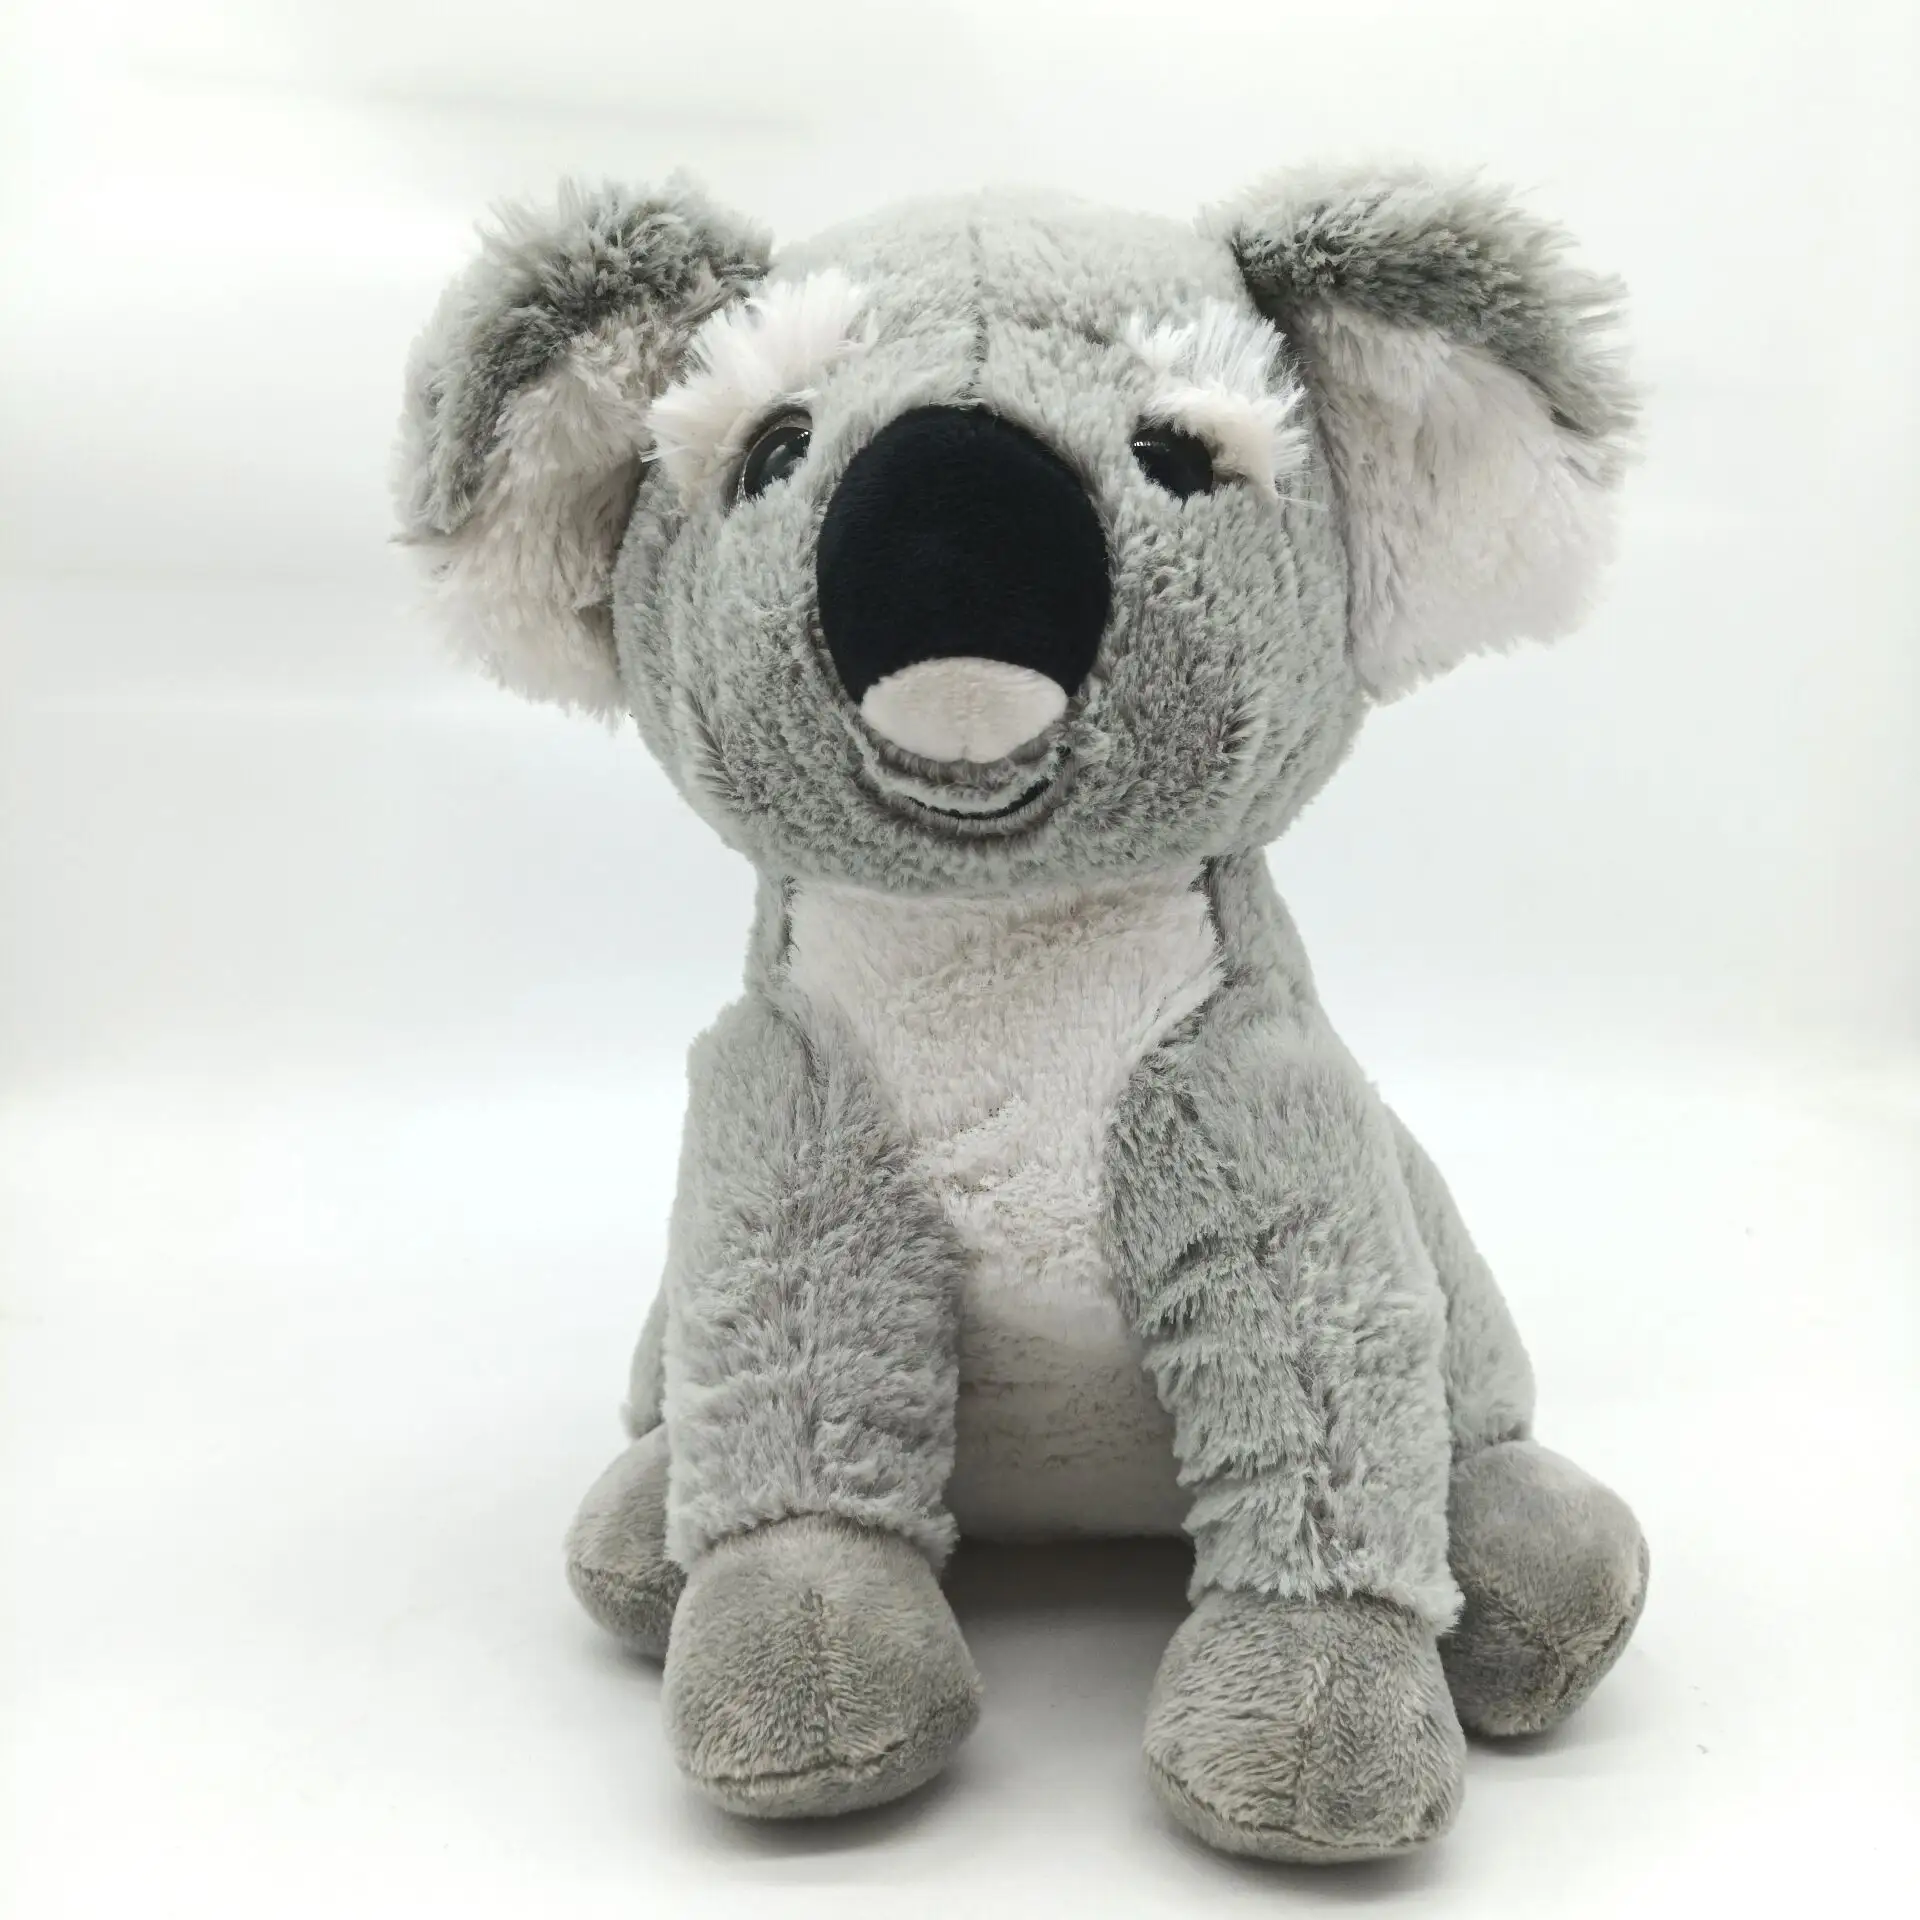 Koala australiano juguetes de peluche Koala gris juguetes de peluche lindo Koala juguetes de peluche